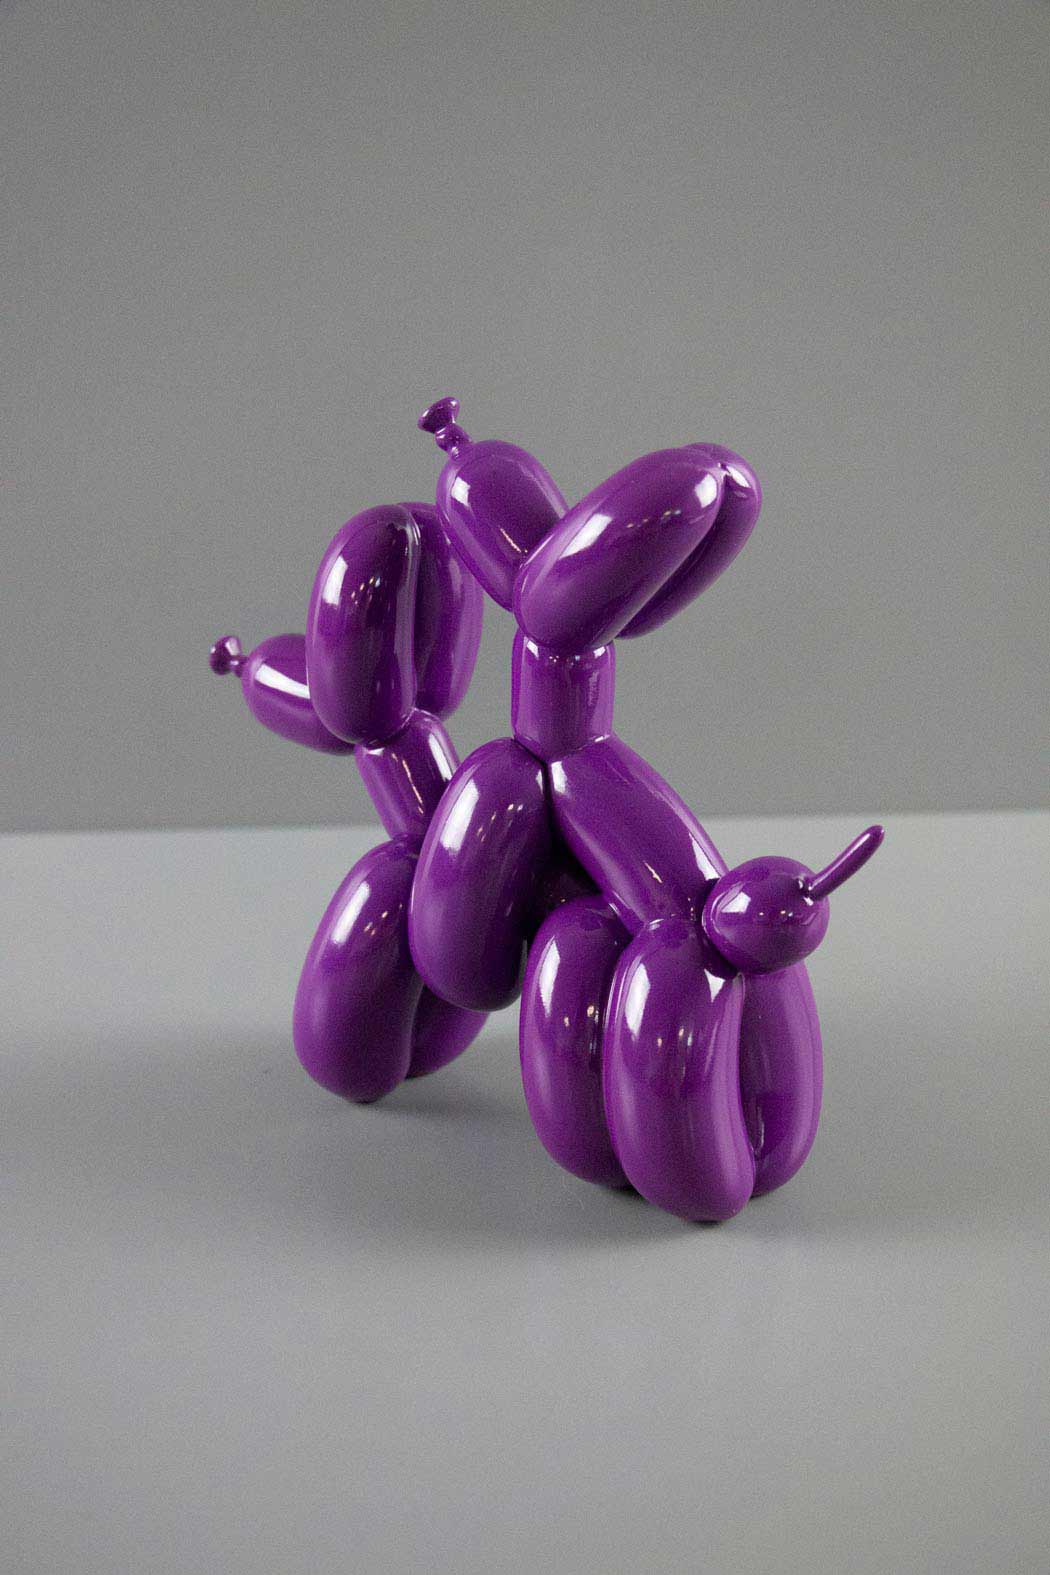 Humpek Purple Sculpture Enlarged